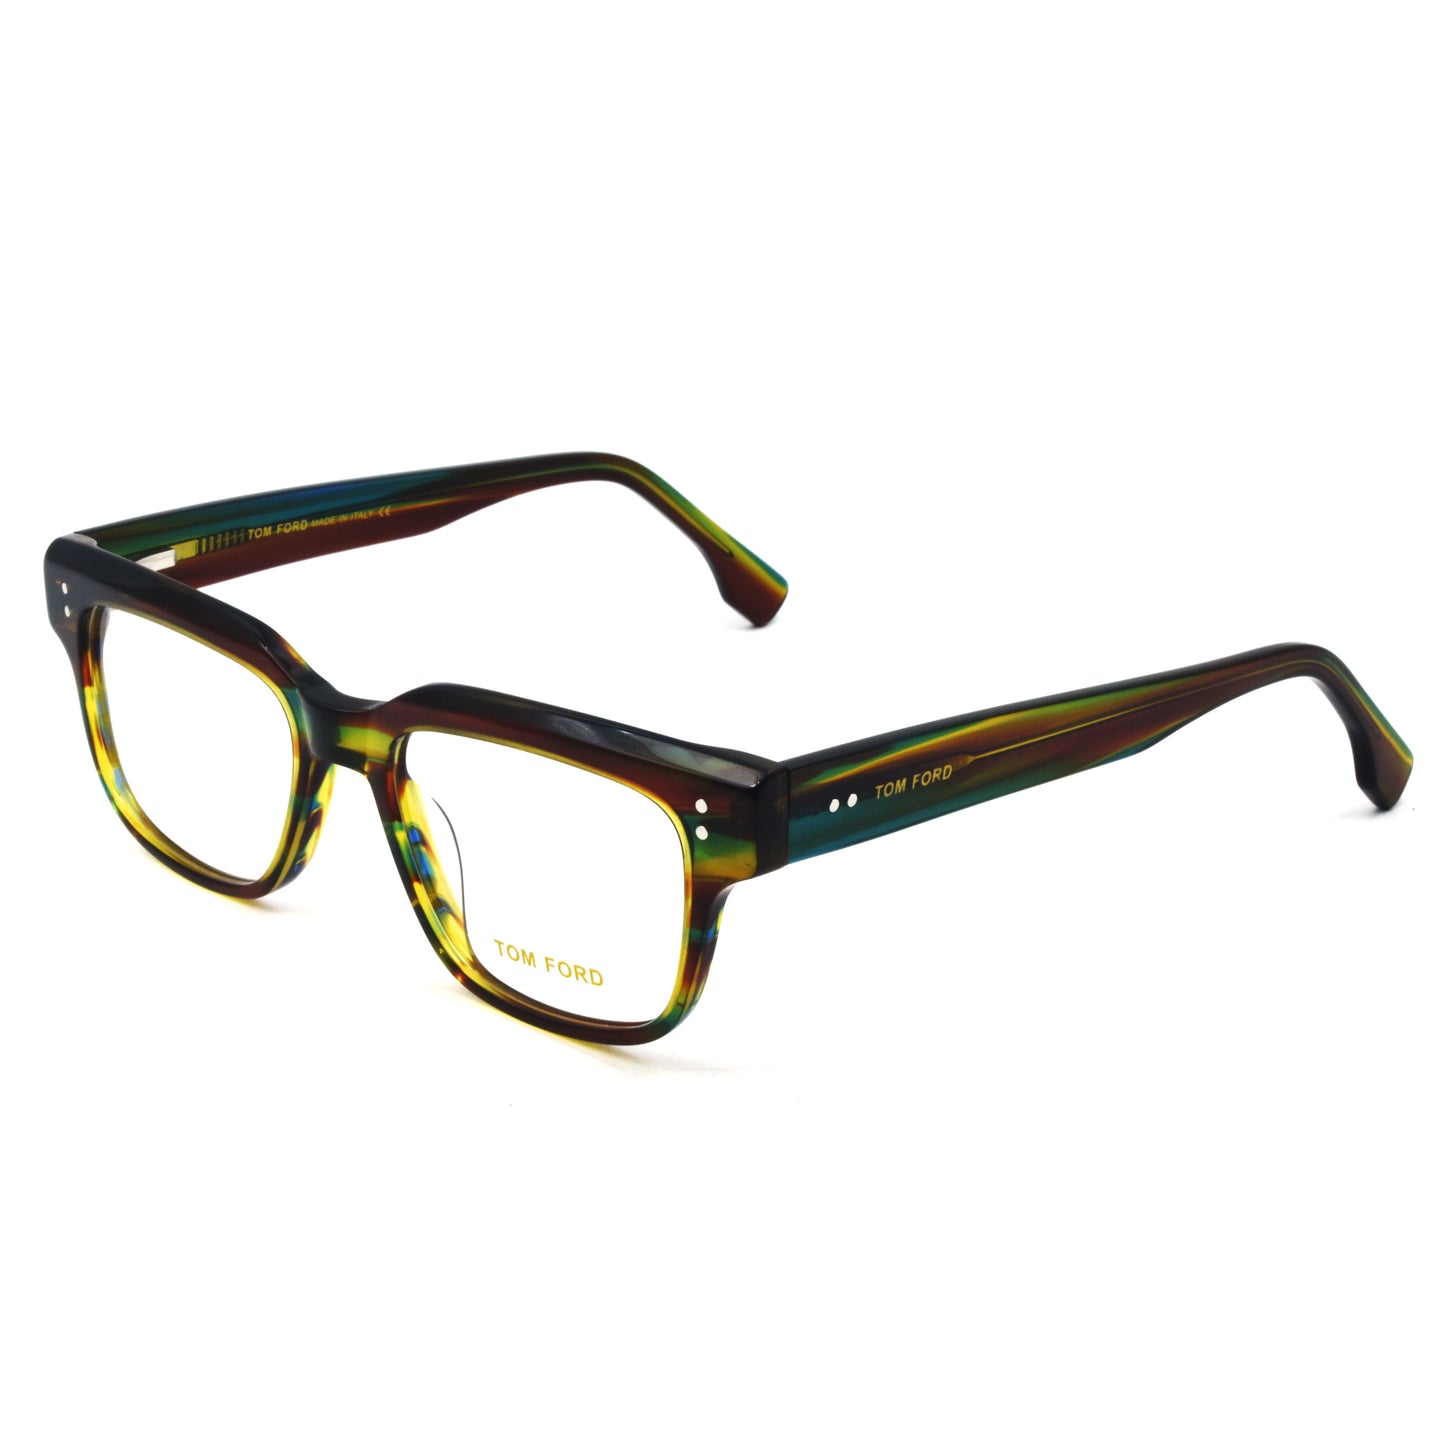 Trendy Stylish Optic Frame | TFord Frame 43 | Premium Quality Eye Glass